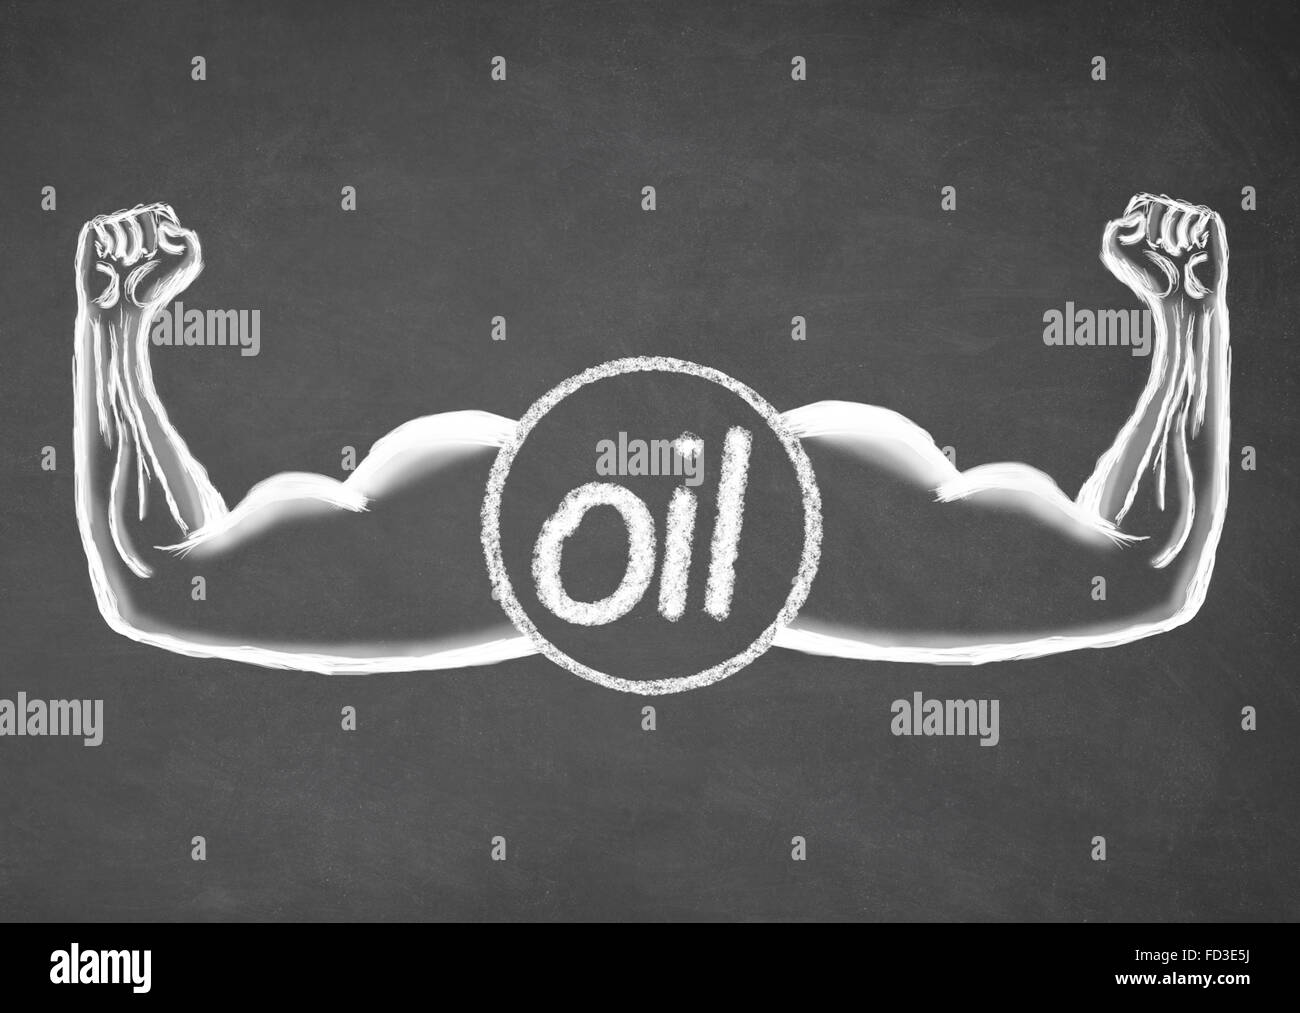 Strong Oil. Financial concept. Stock Photo